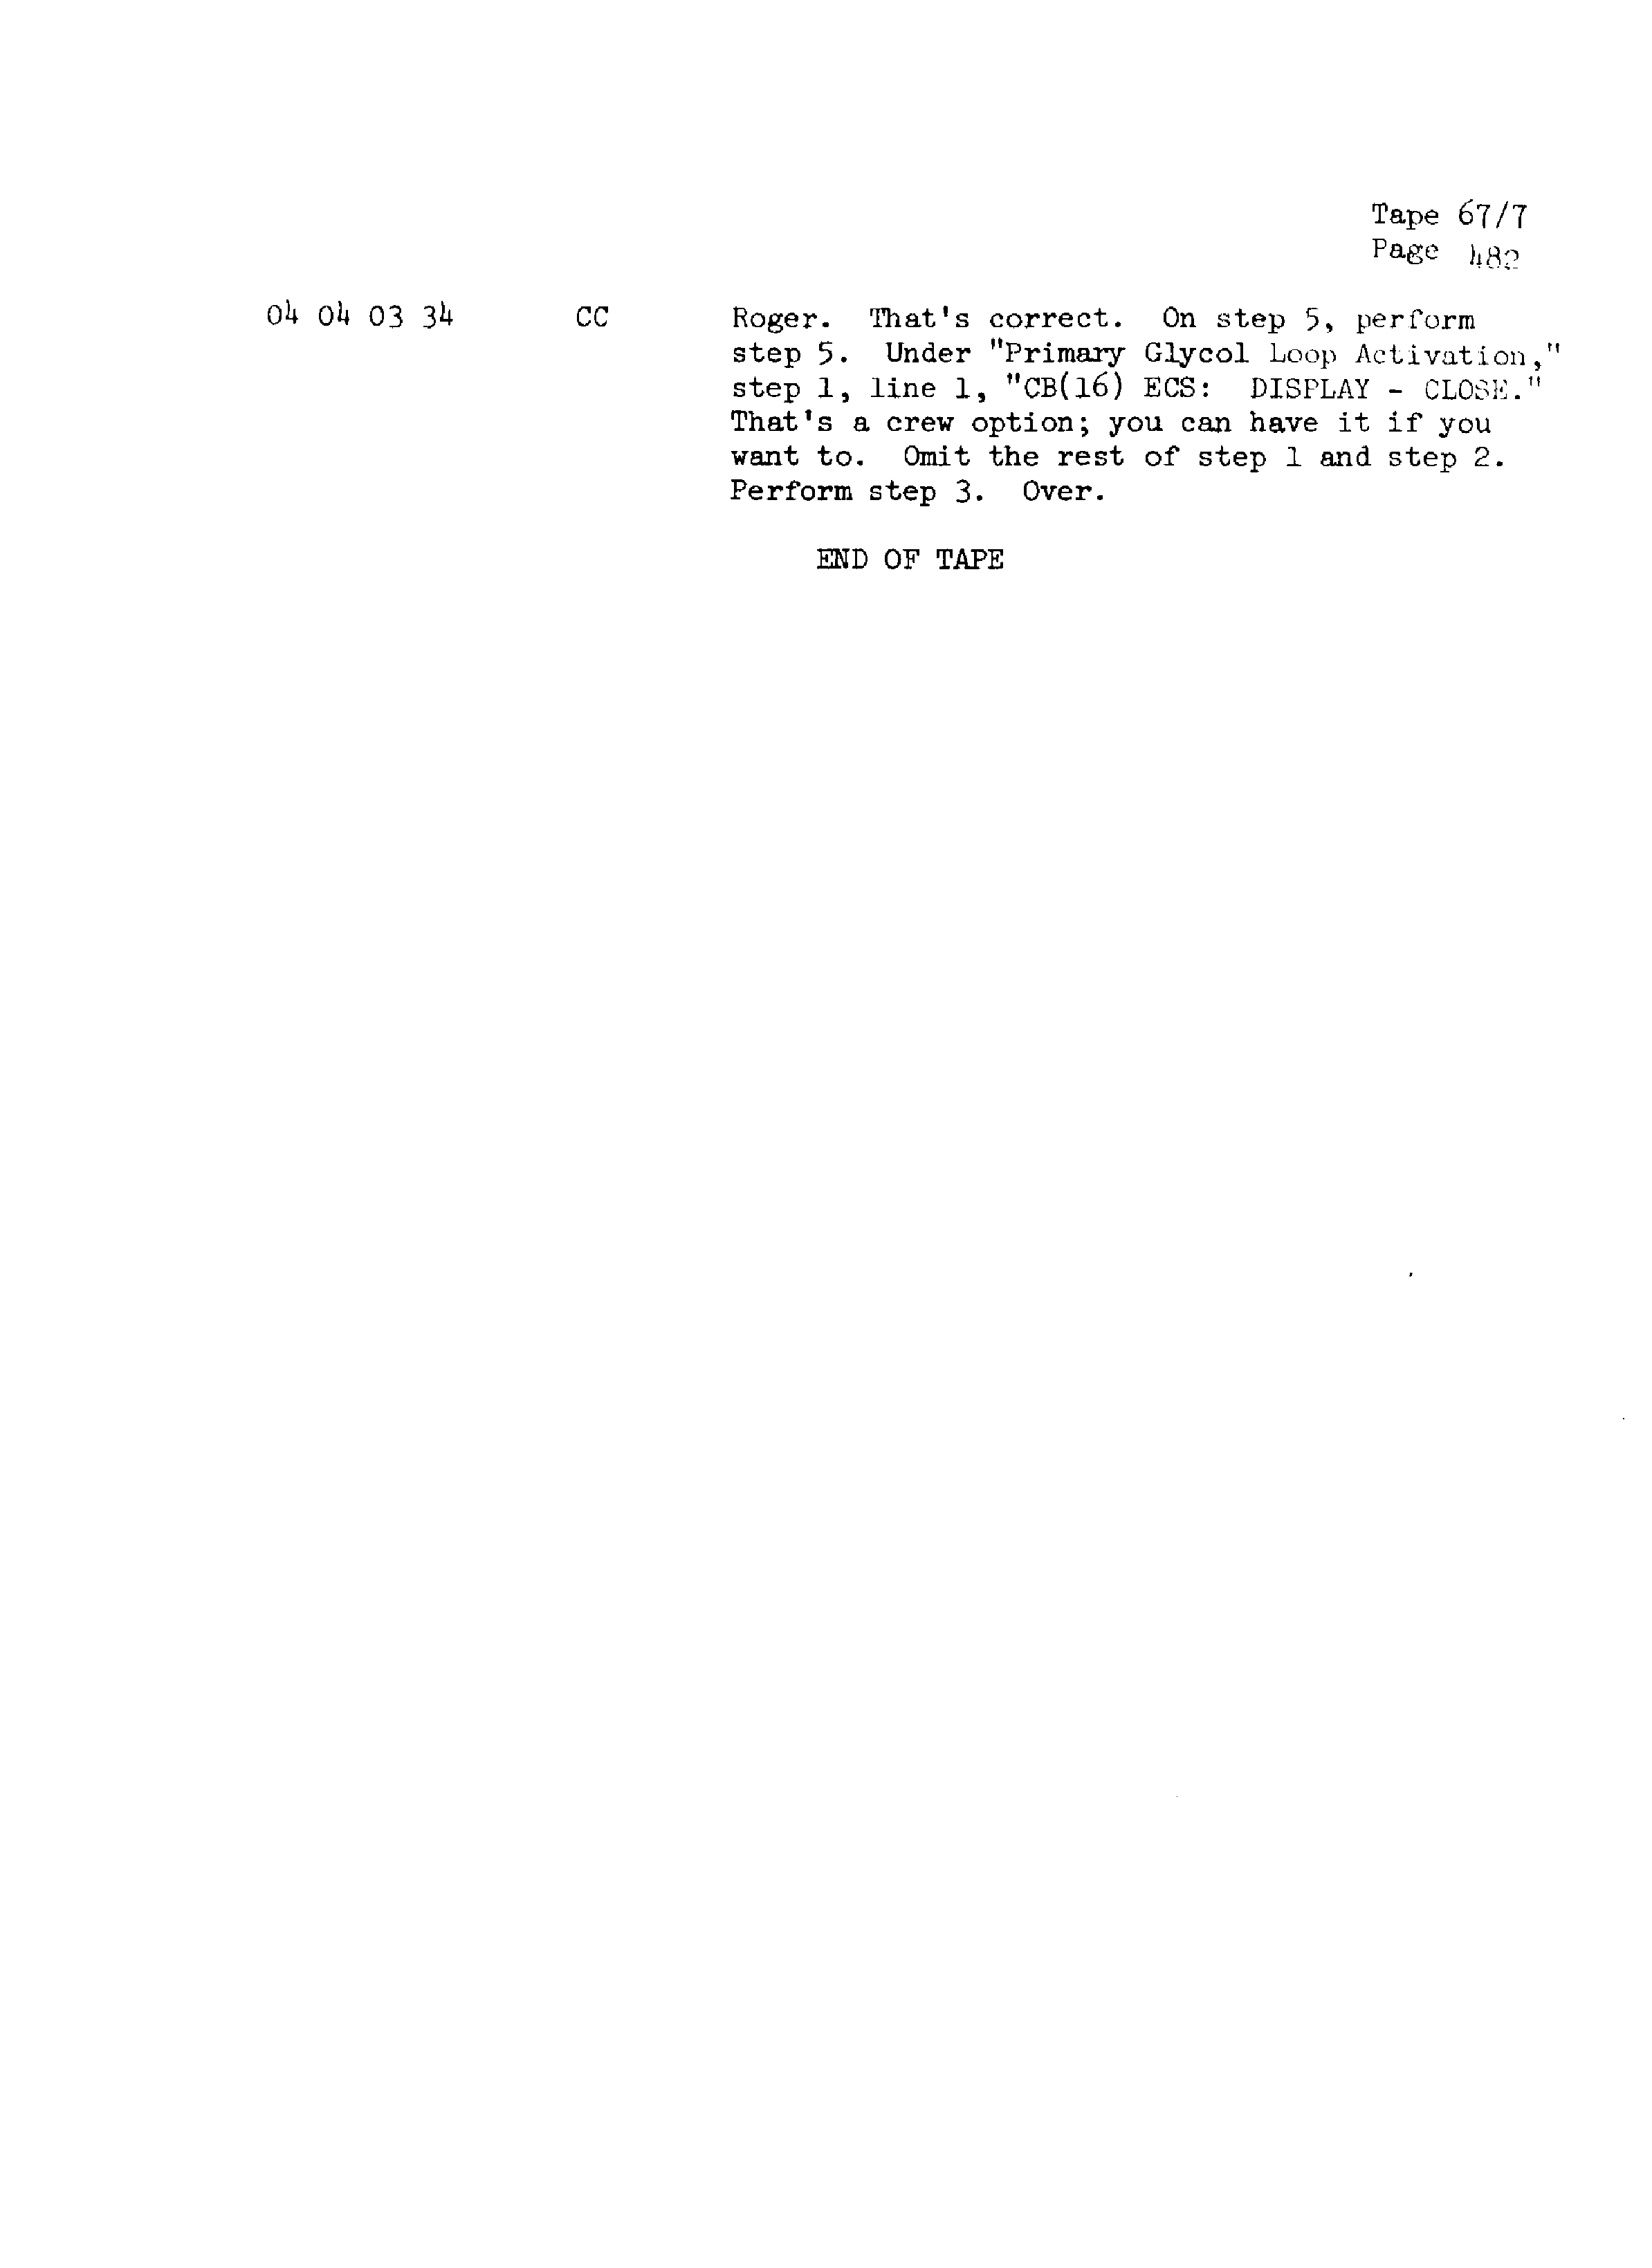 Page 489 of Apollo 13’s original transcript